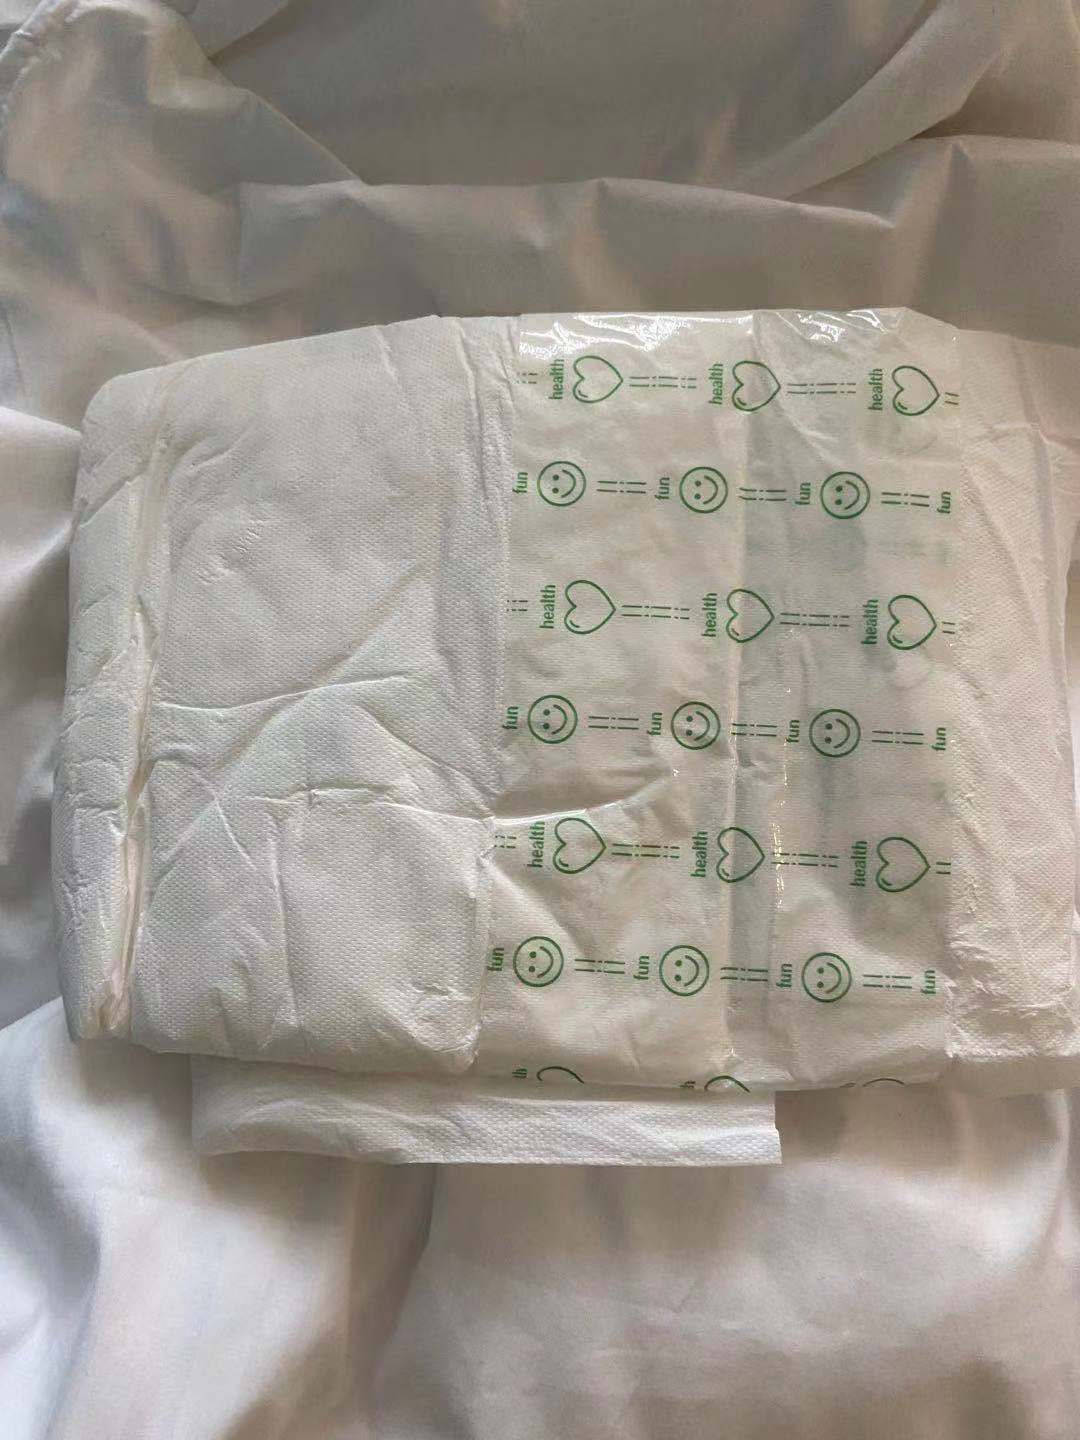 陈佳乐等医护人员使用的成人纸尿裤